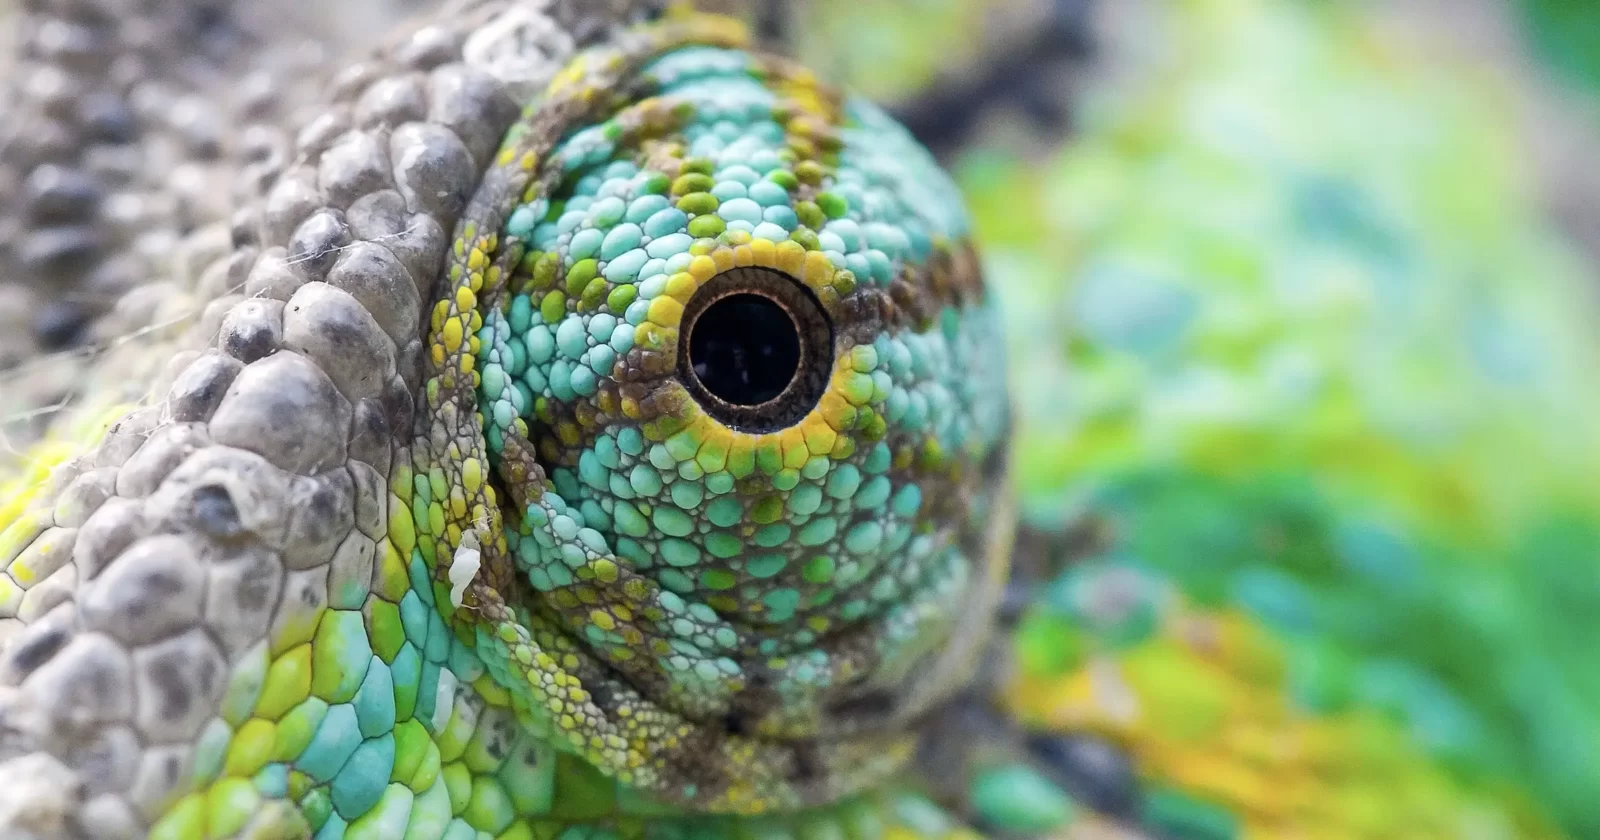 Chameleon eye